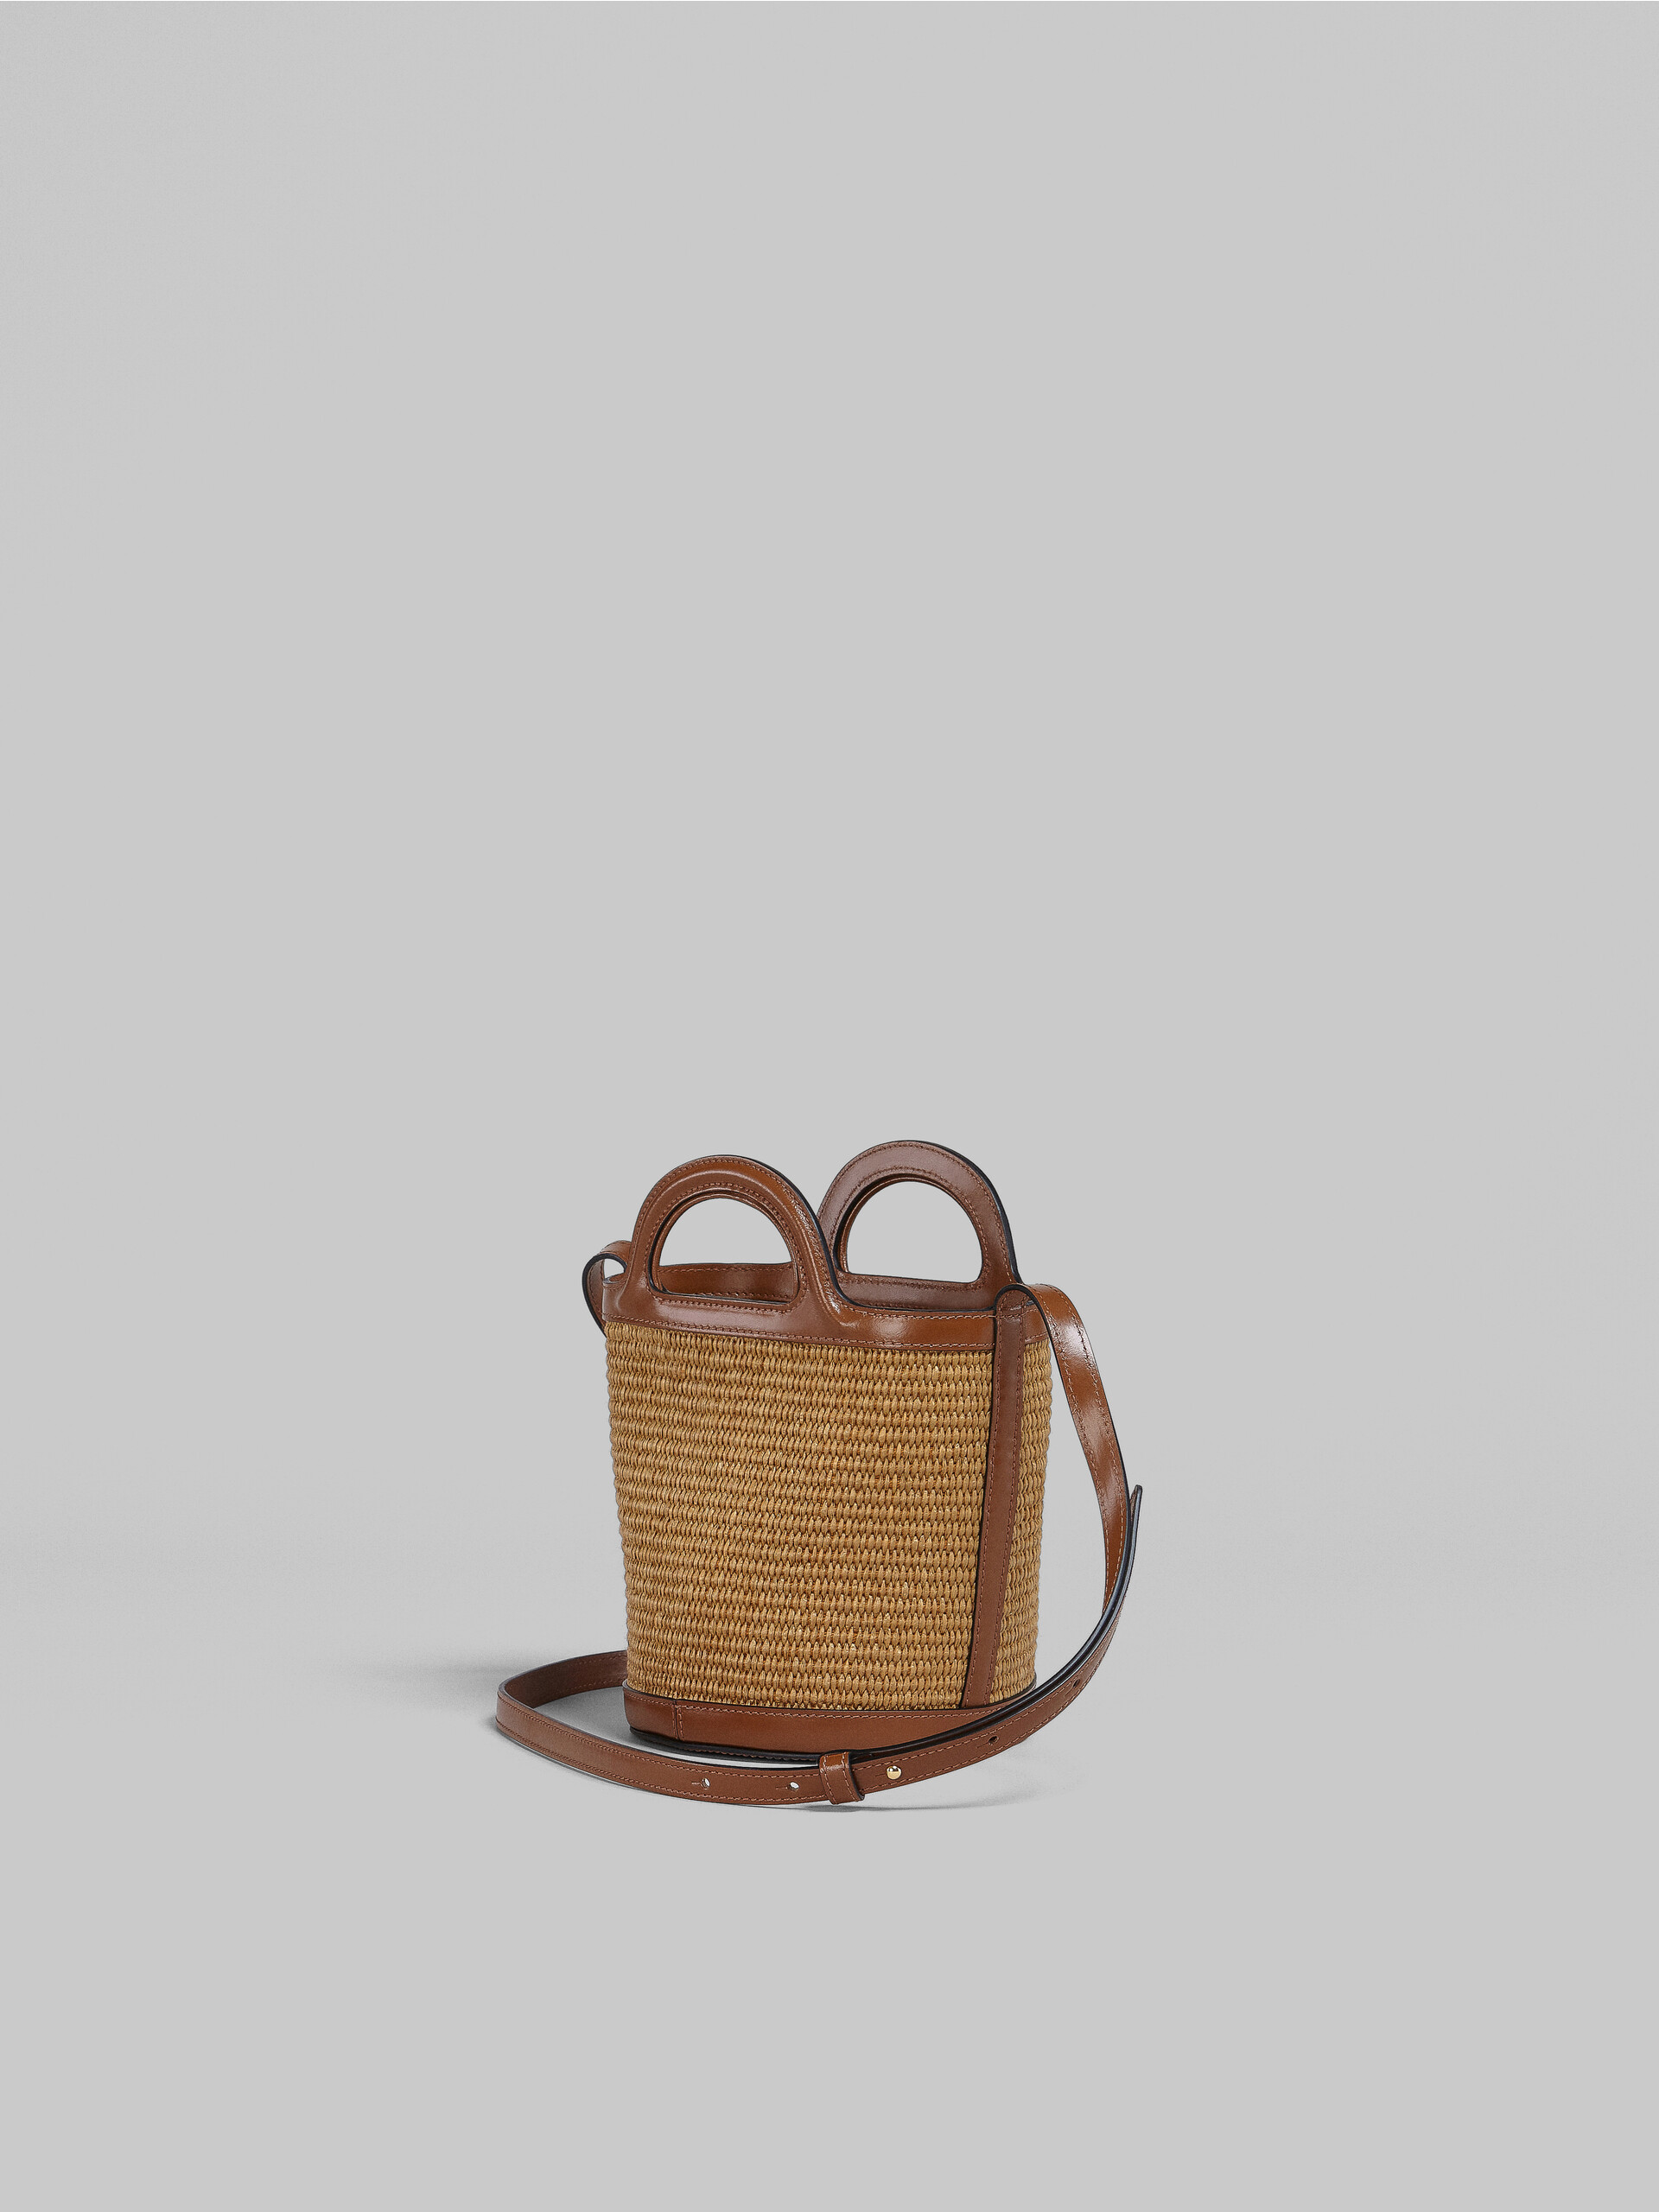 TROPICALIA bag a secchiello mini in pelle marrone e rafia - Borse a spalla - Image 3